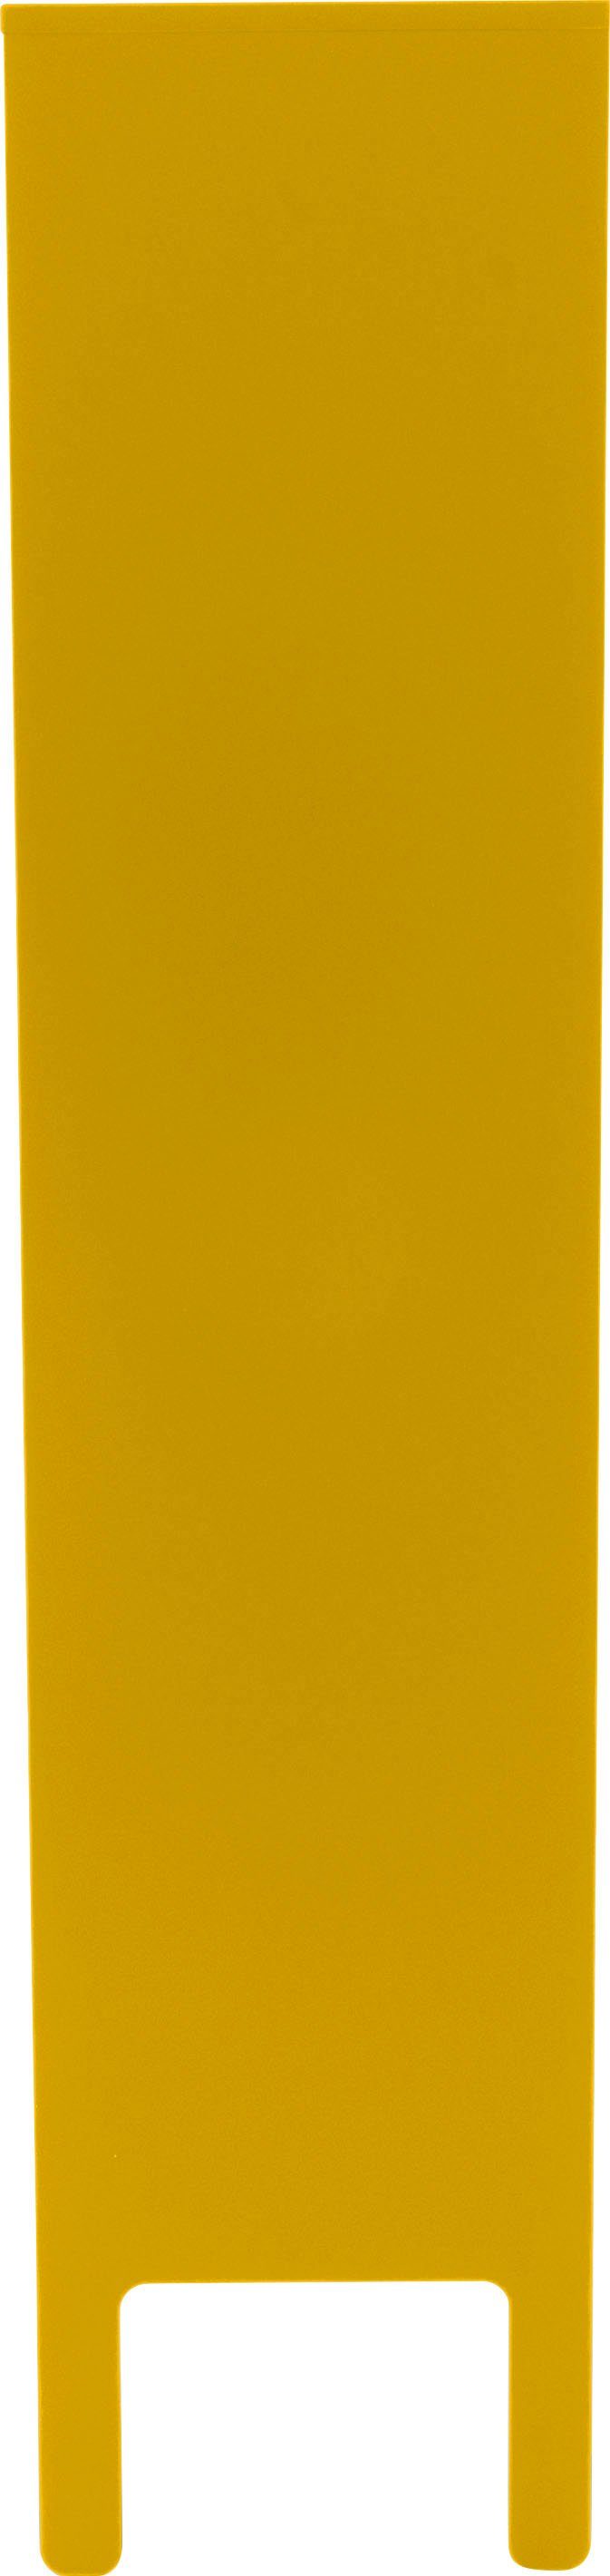 By Olivier und UNO Schubladen, Tenzo von 2 | Tenzo mustard Vitrine Design Toulouse mit mustard Glastüren 2